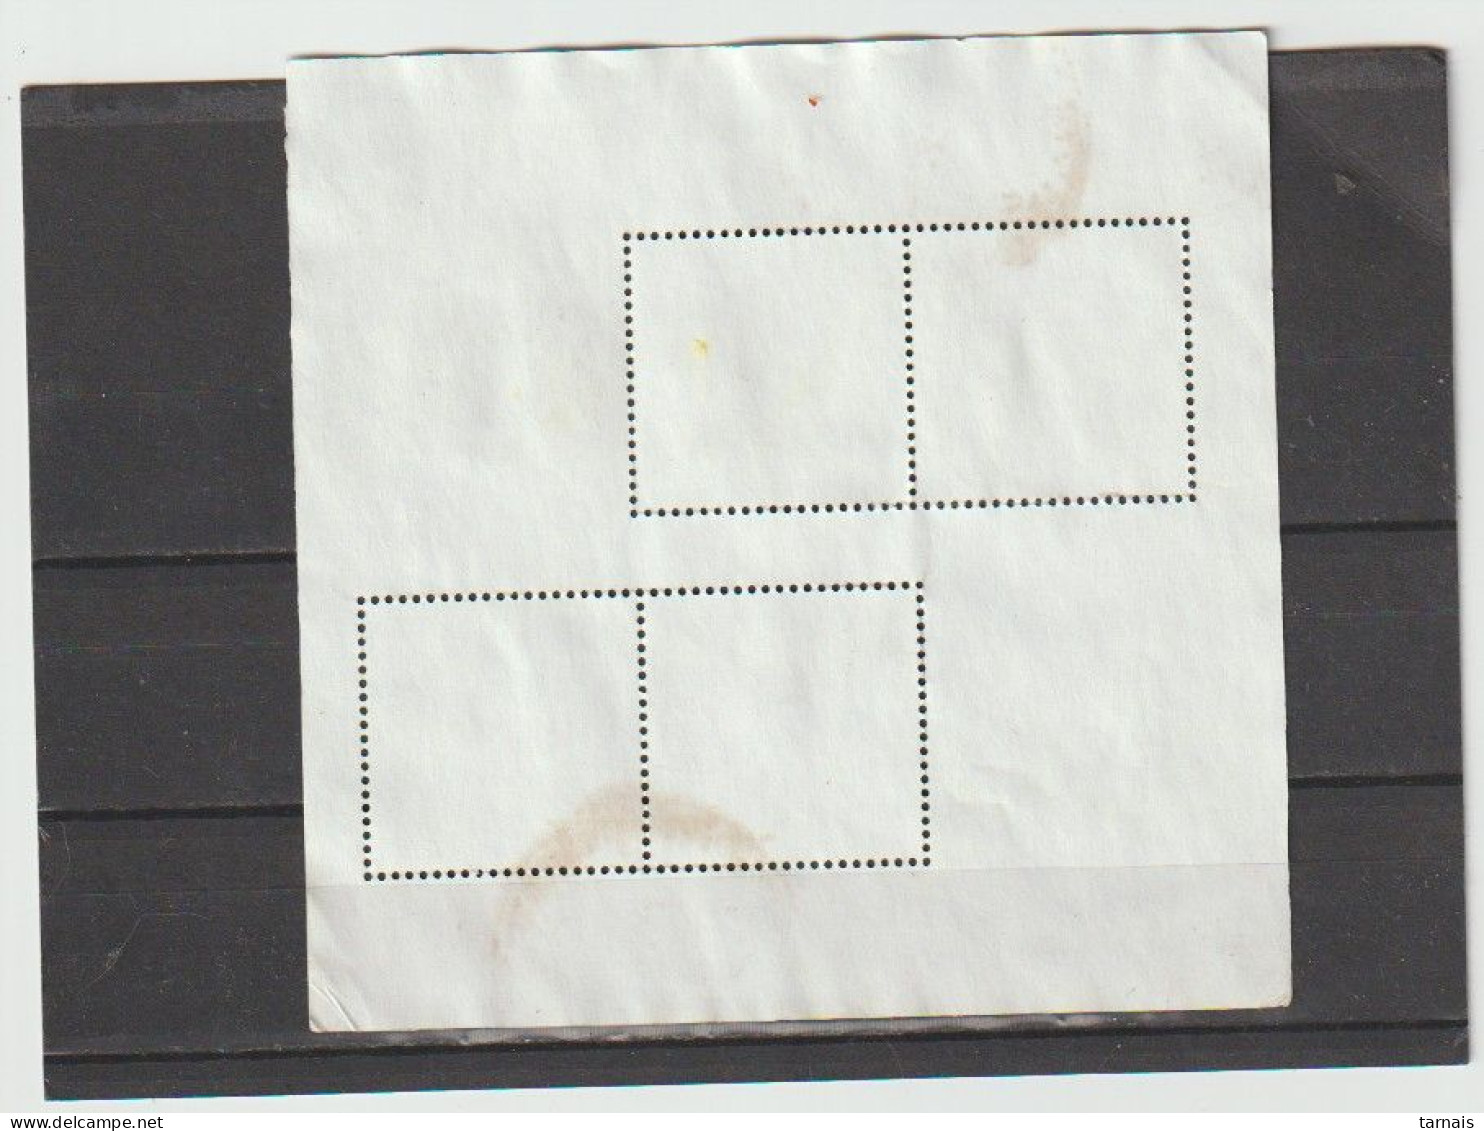 Inde 2012 Bloc Feuillet Espèces Endémiques Oblitéré (lot 142) - Used Stamps